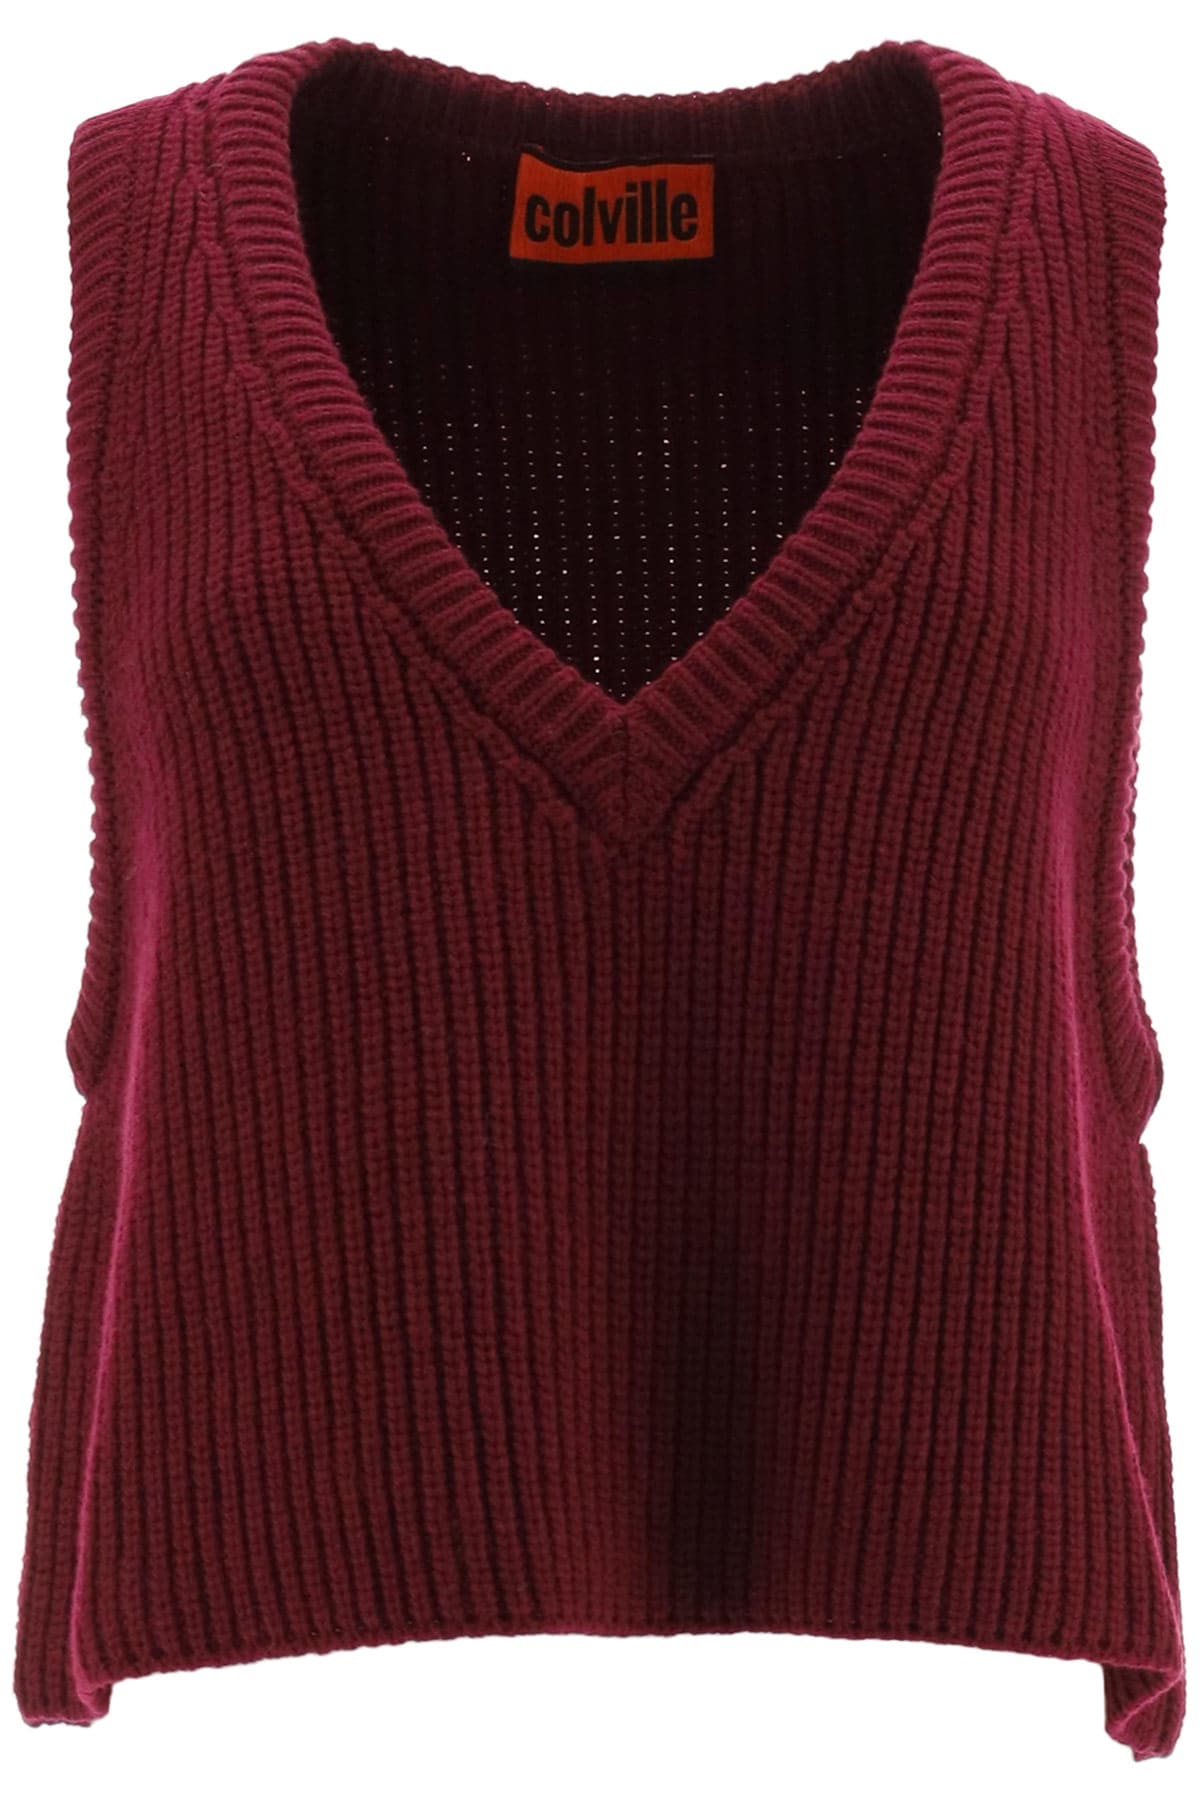 Colville Virgin Wool Knit Vest